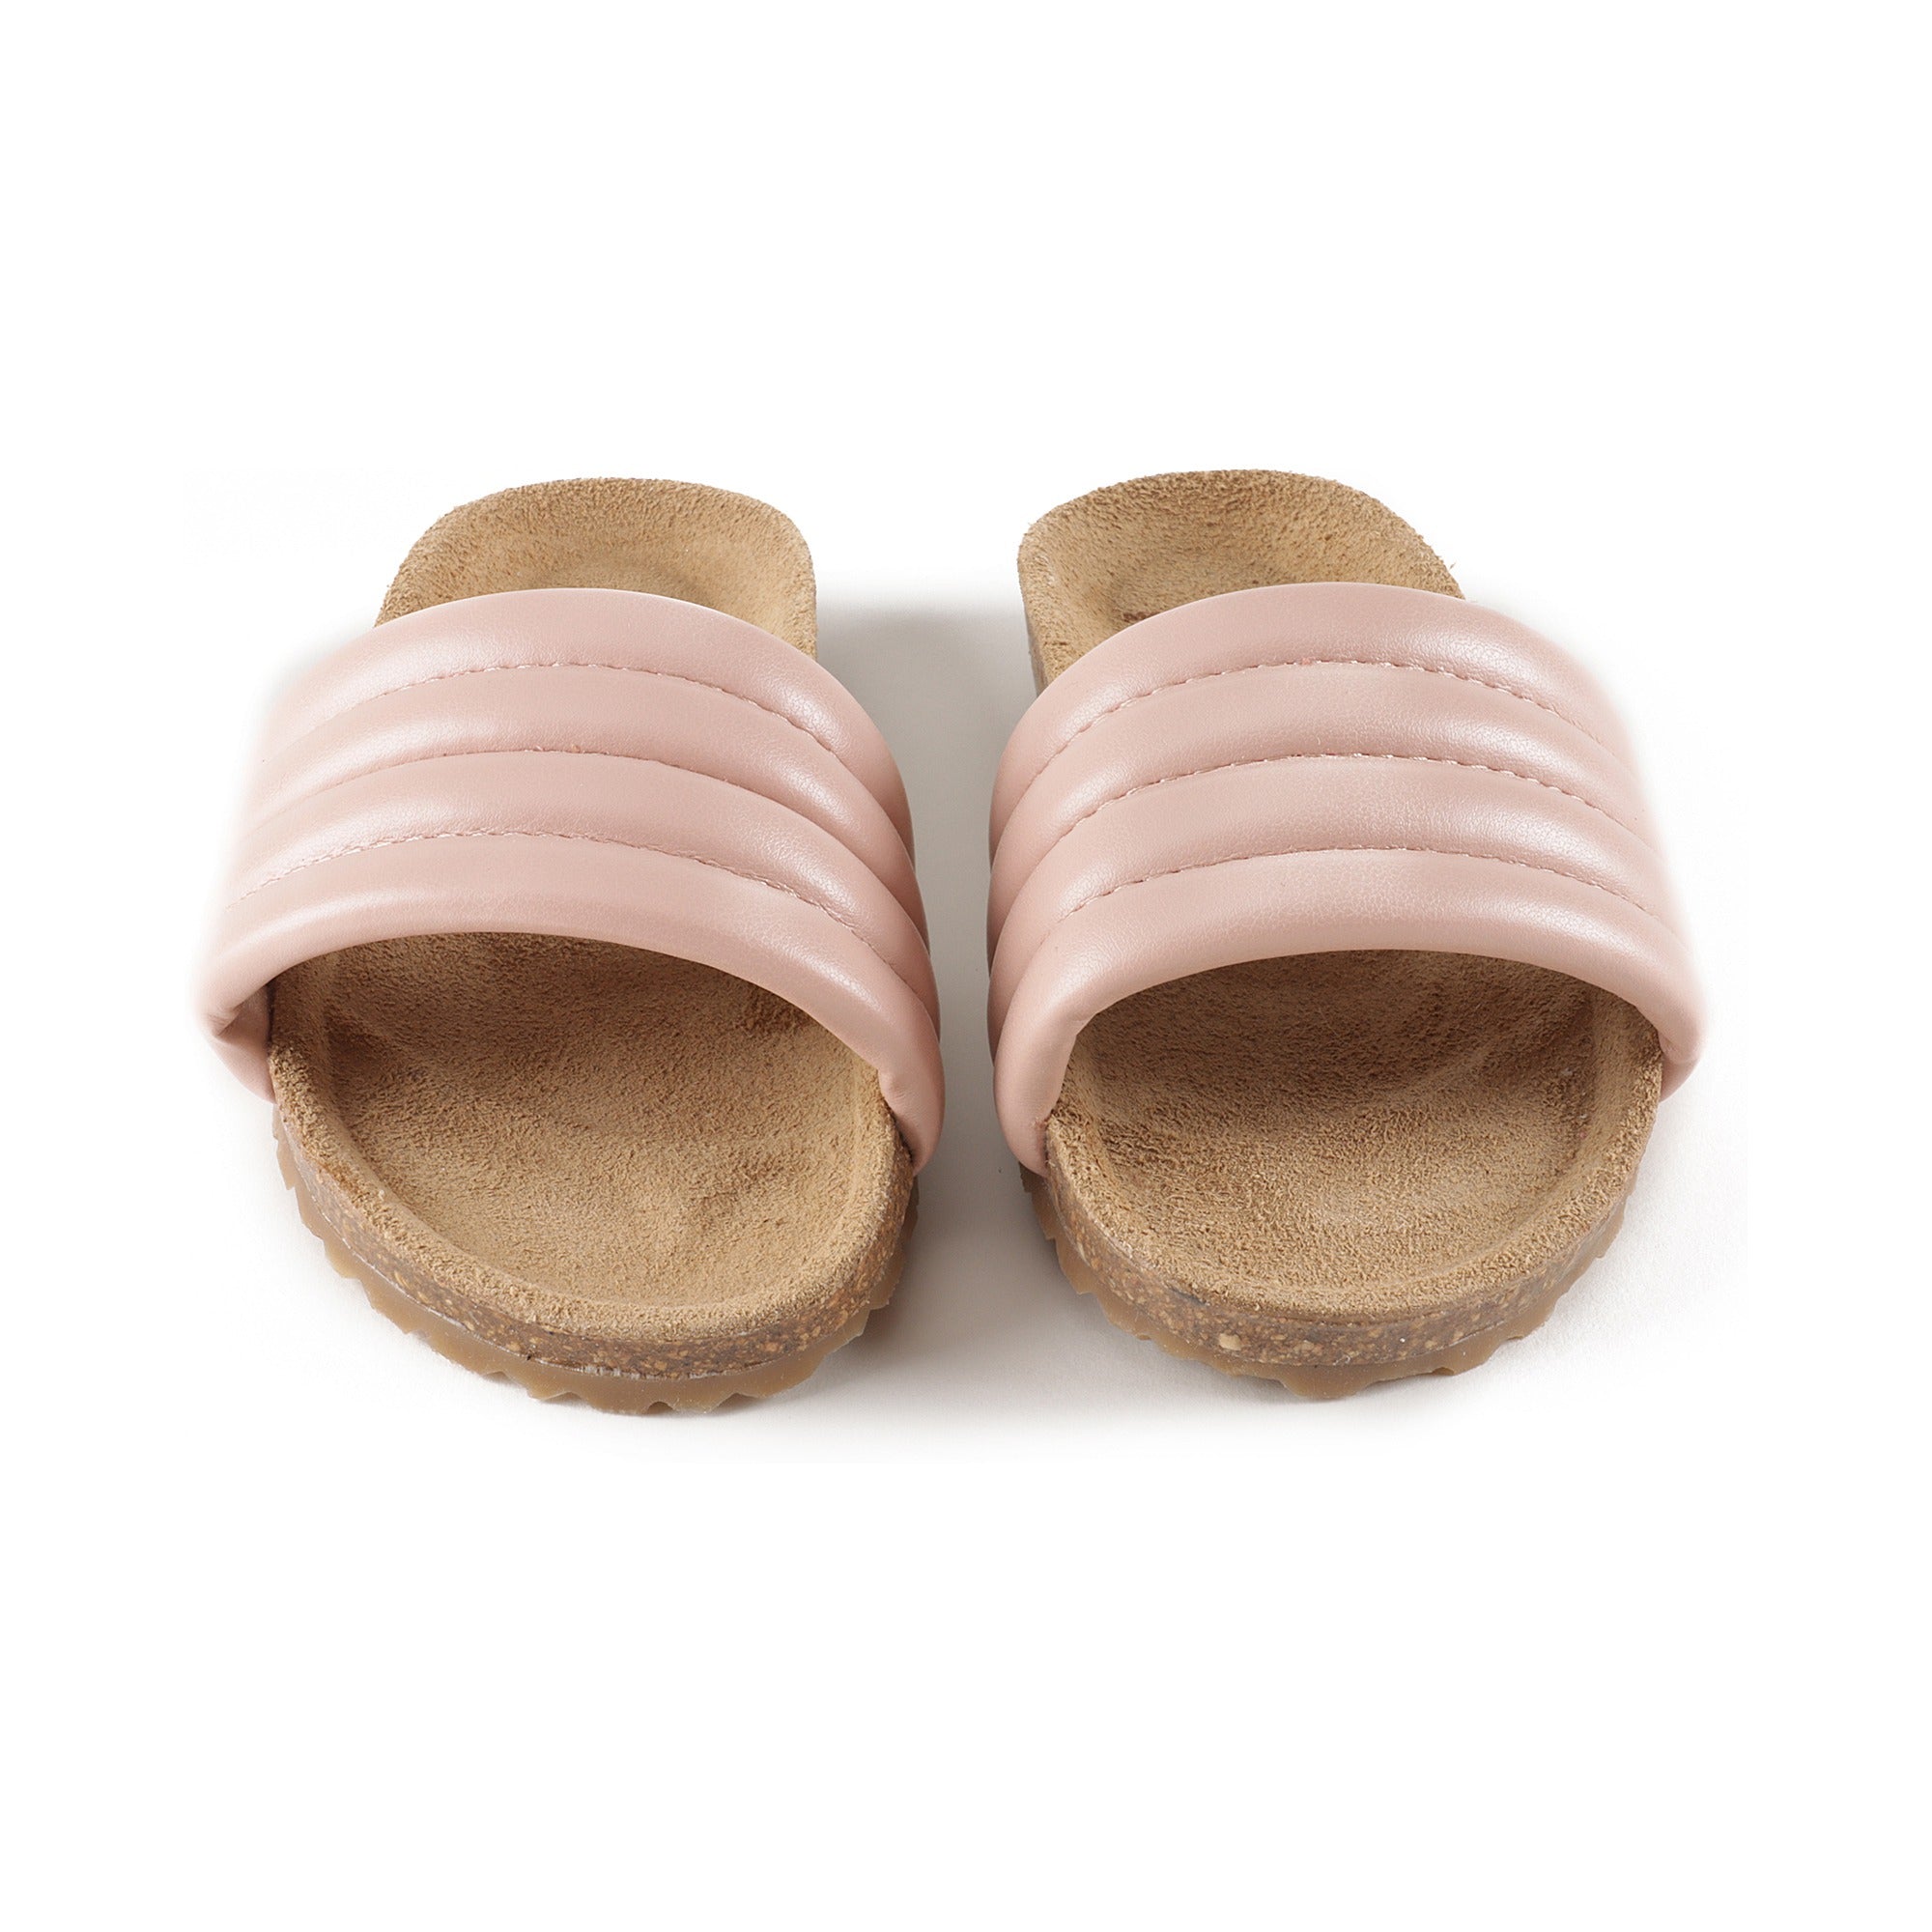 Girls Pink Sandals